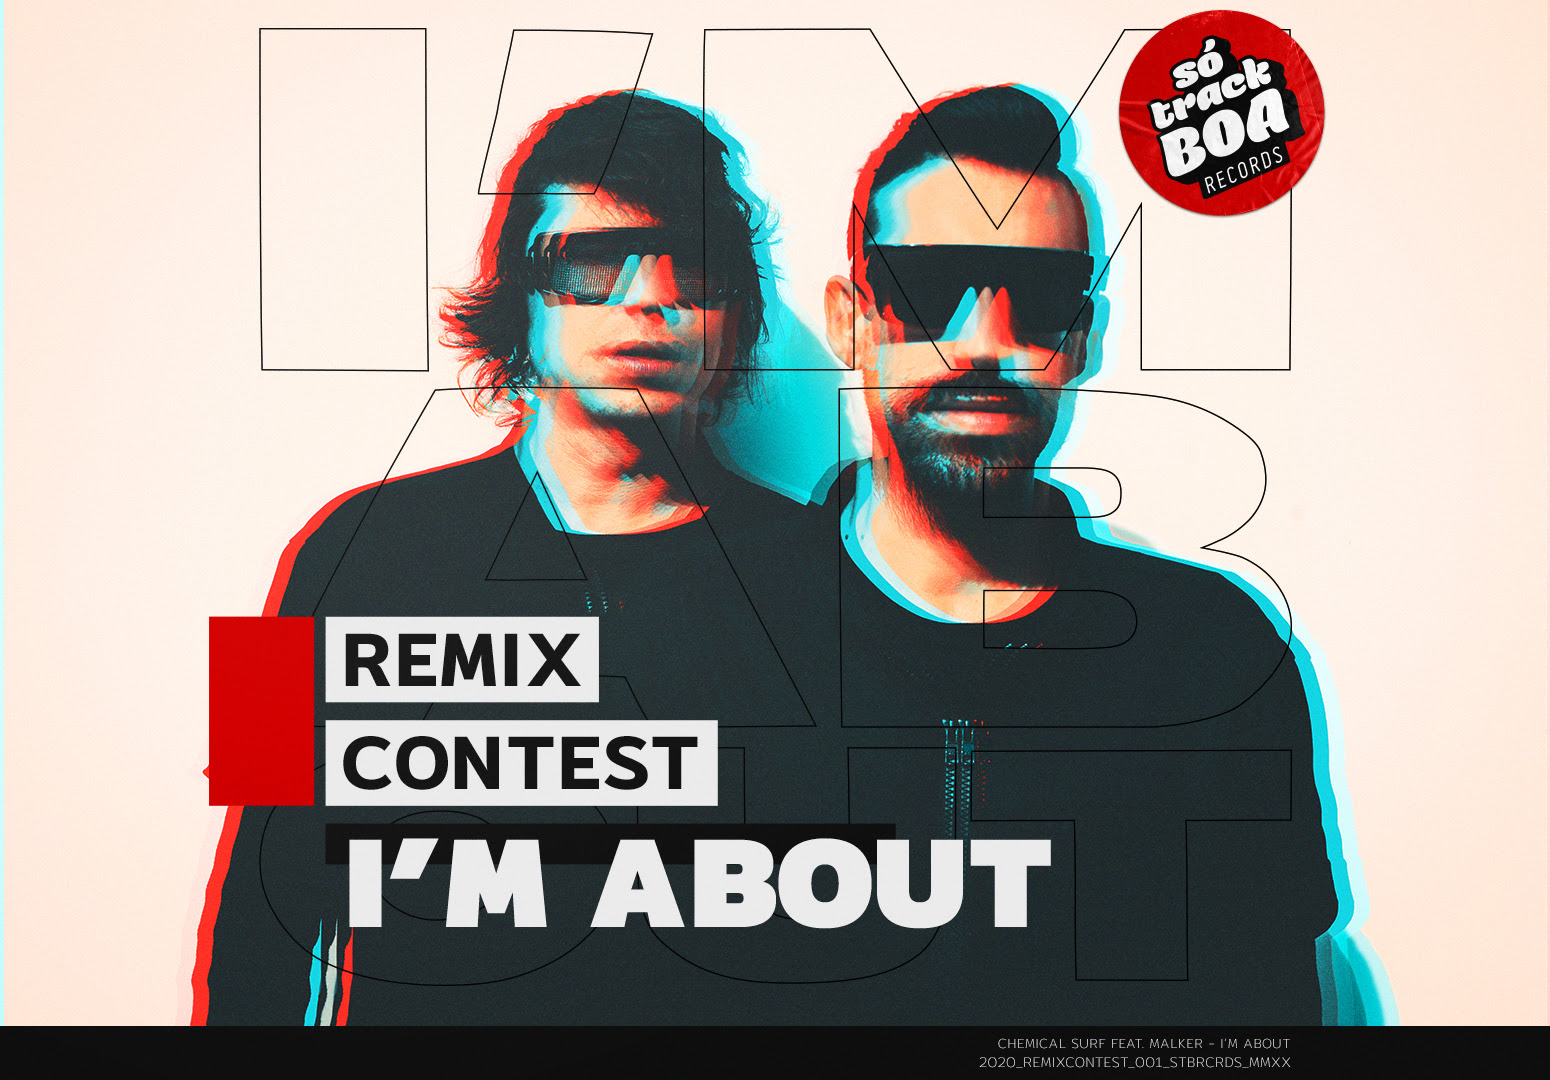 Participe do remix contest de Im About do Chemical Surf e Só Track Boa Records